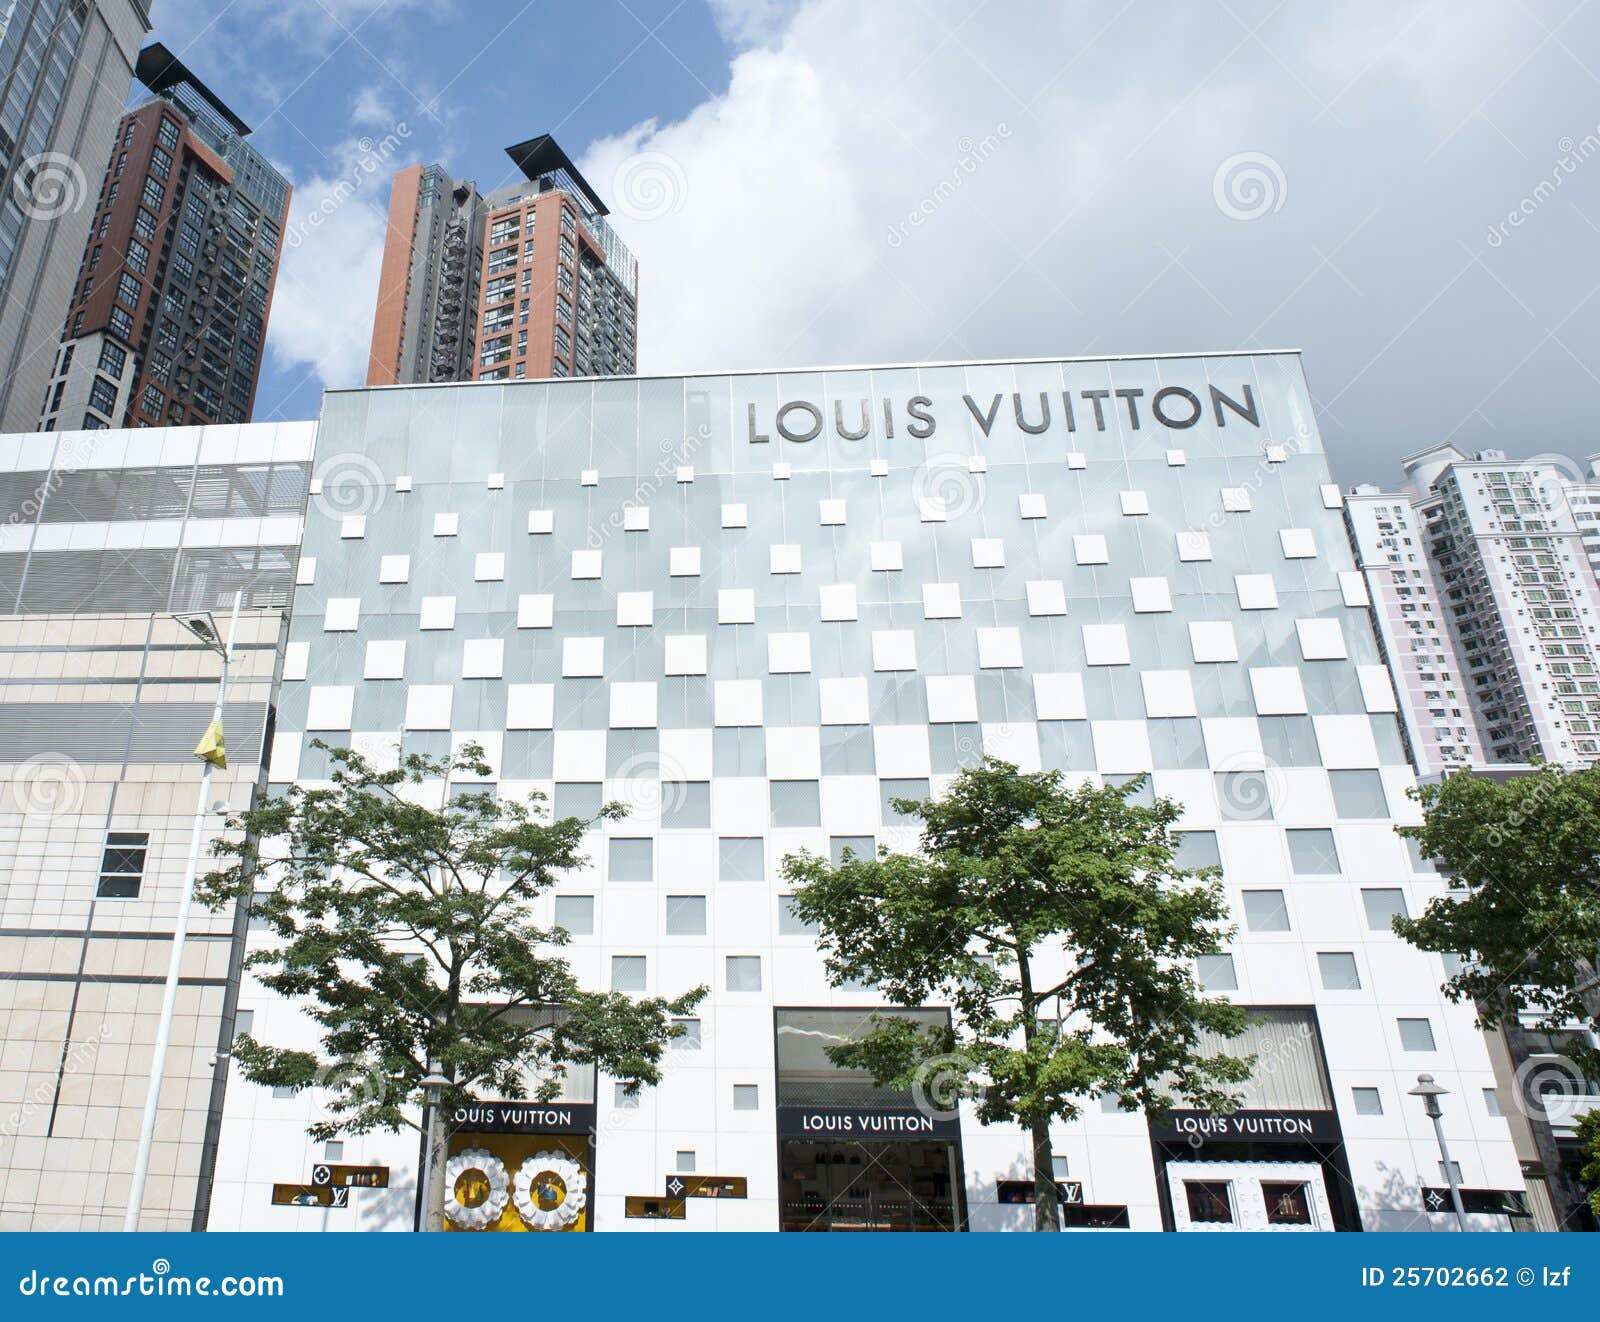 Louis Vuitton Store - Shenzhen, China